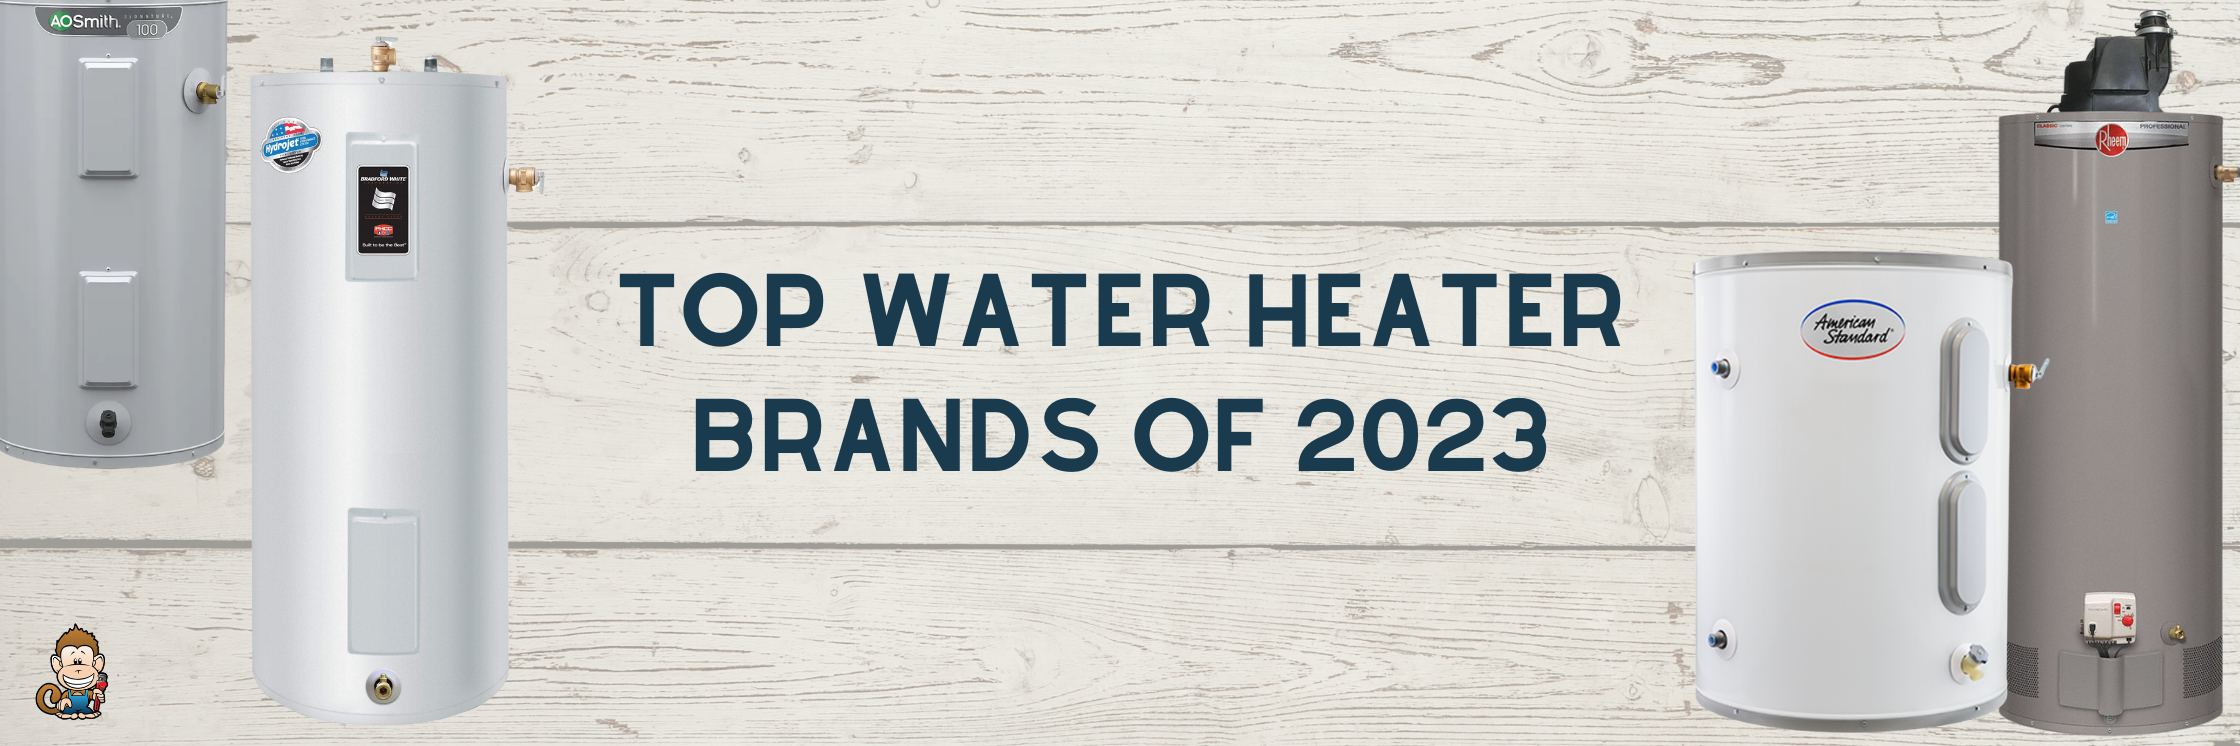 Top Water Heater Brands of 2023